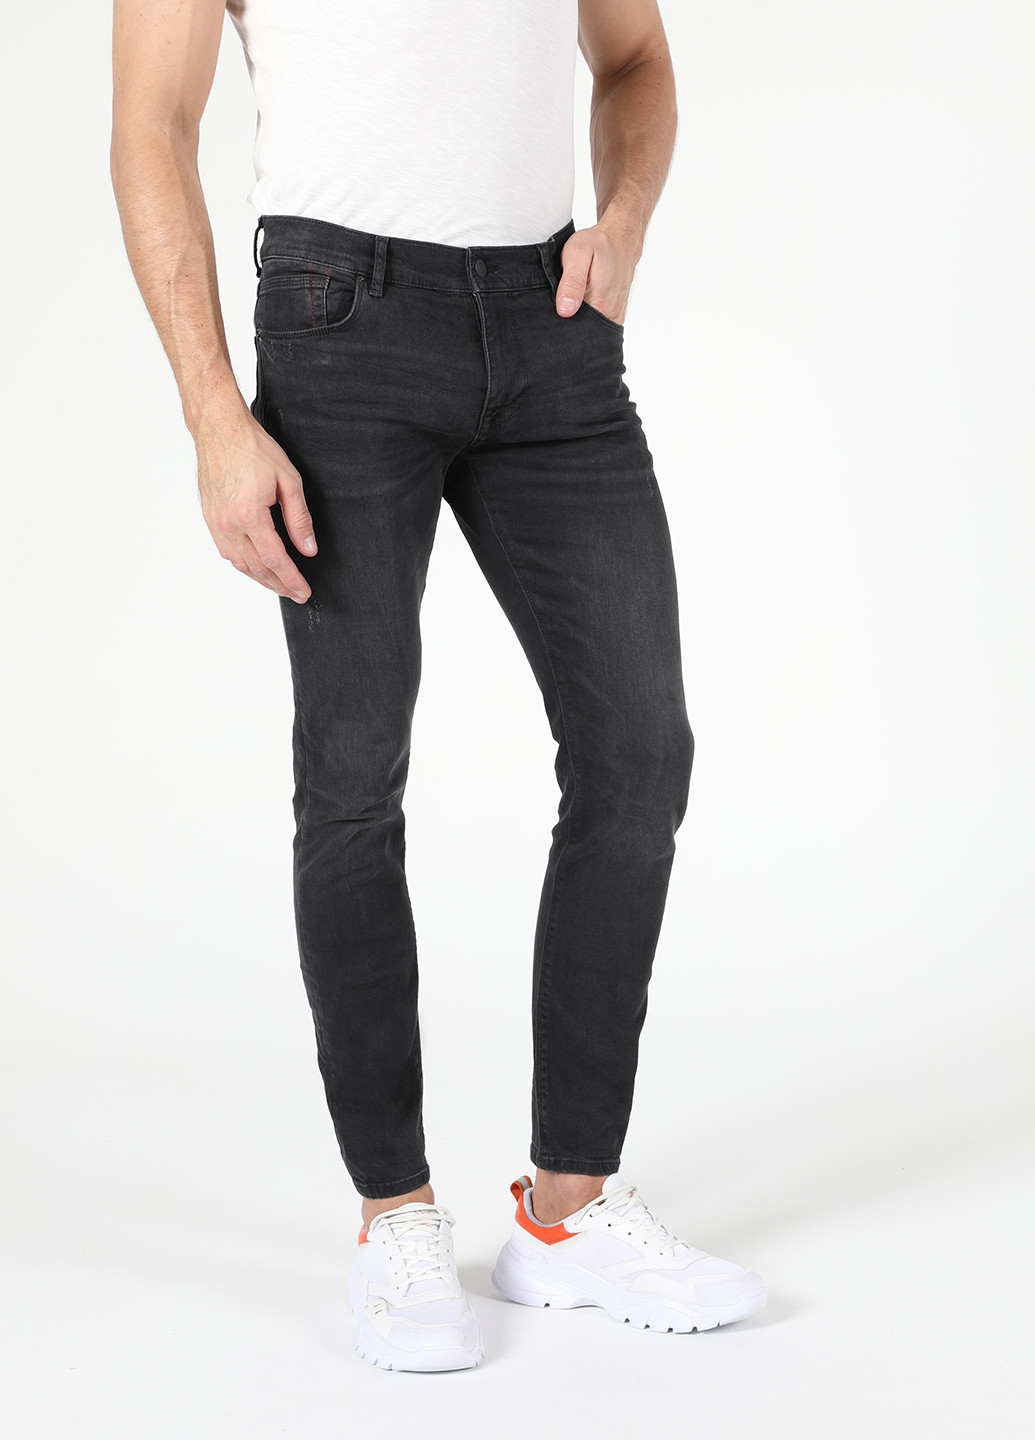 Черные демисезонные зауженные джинсы 040 ALEX Colin's